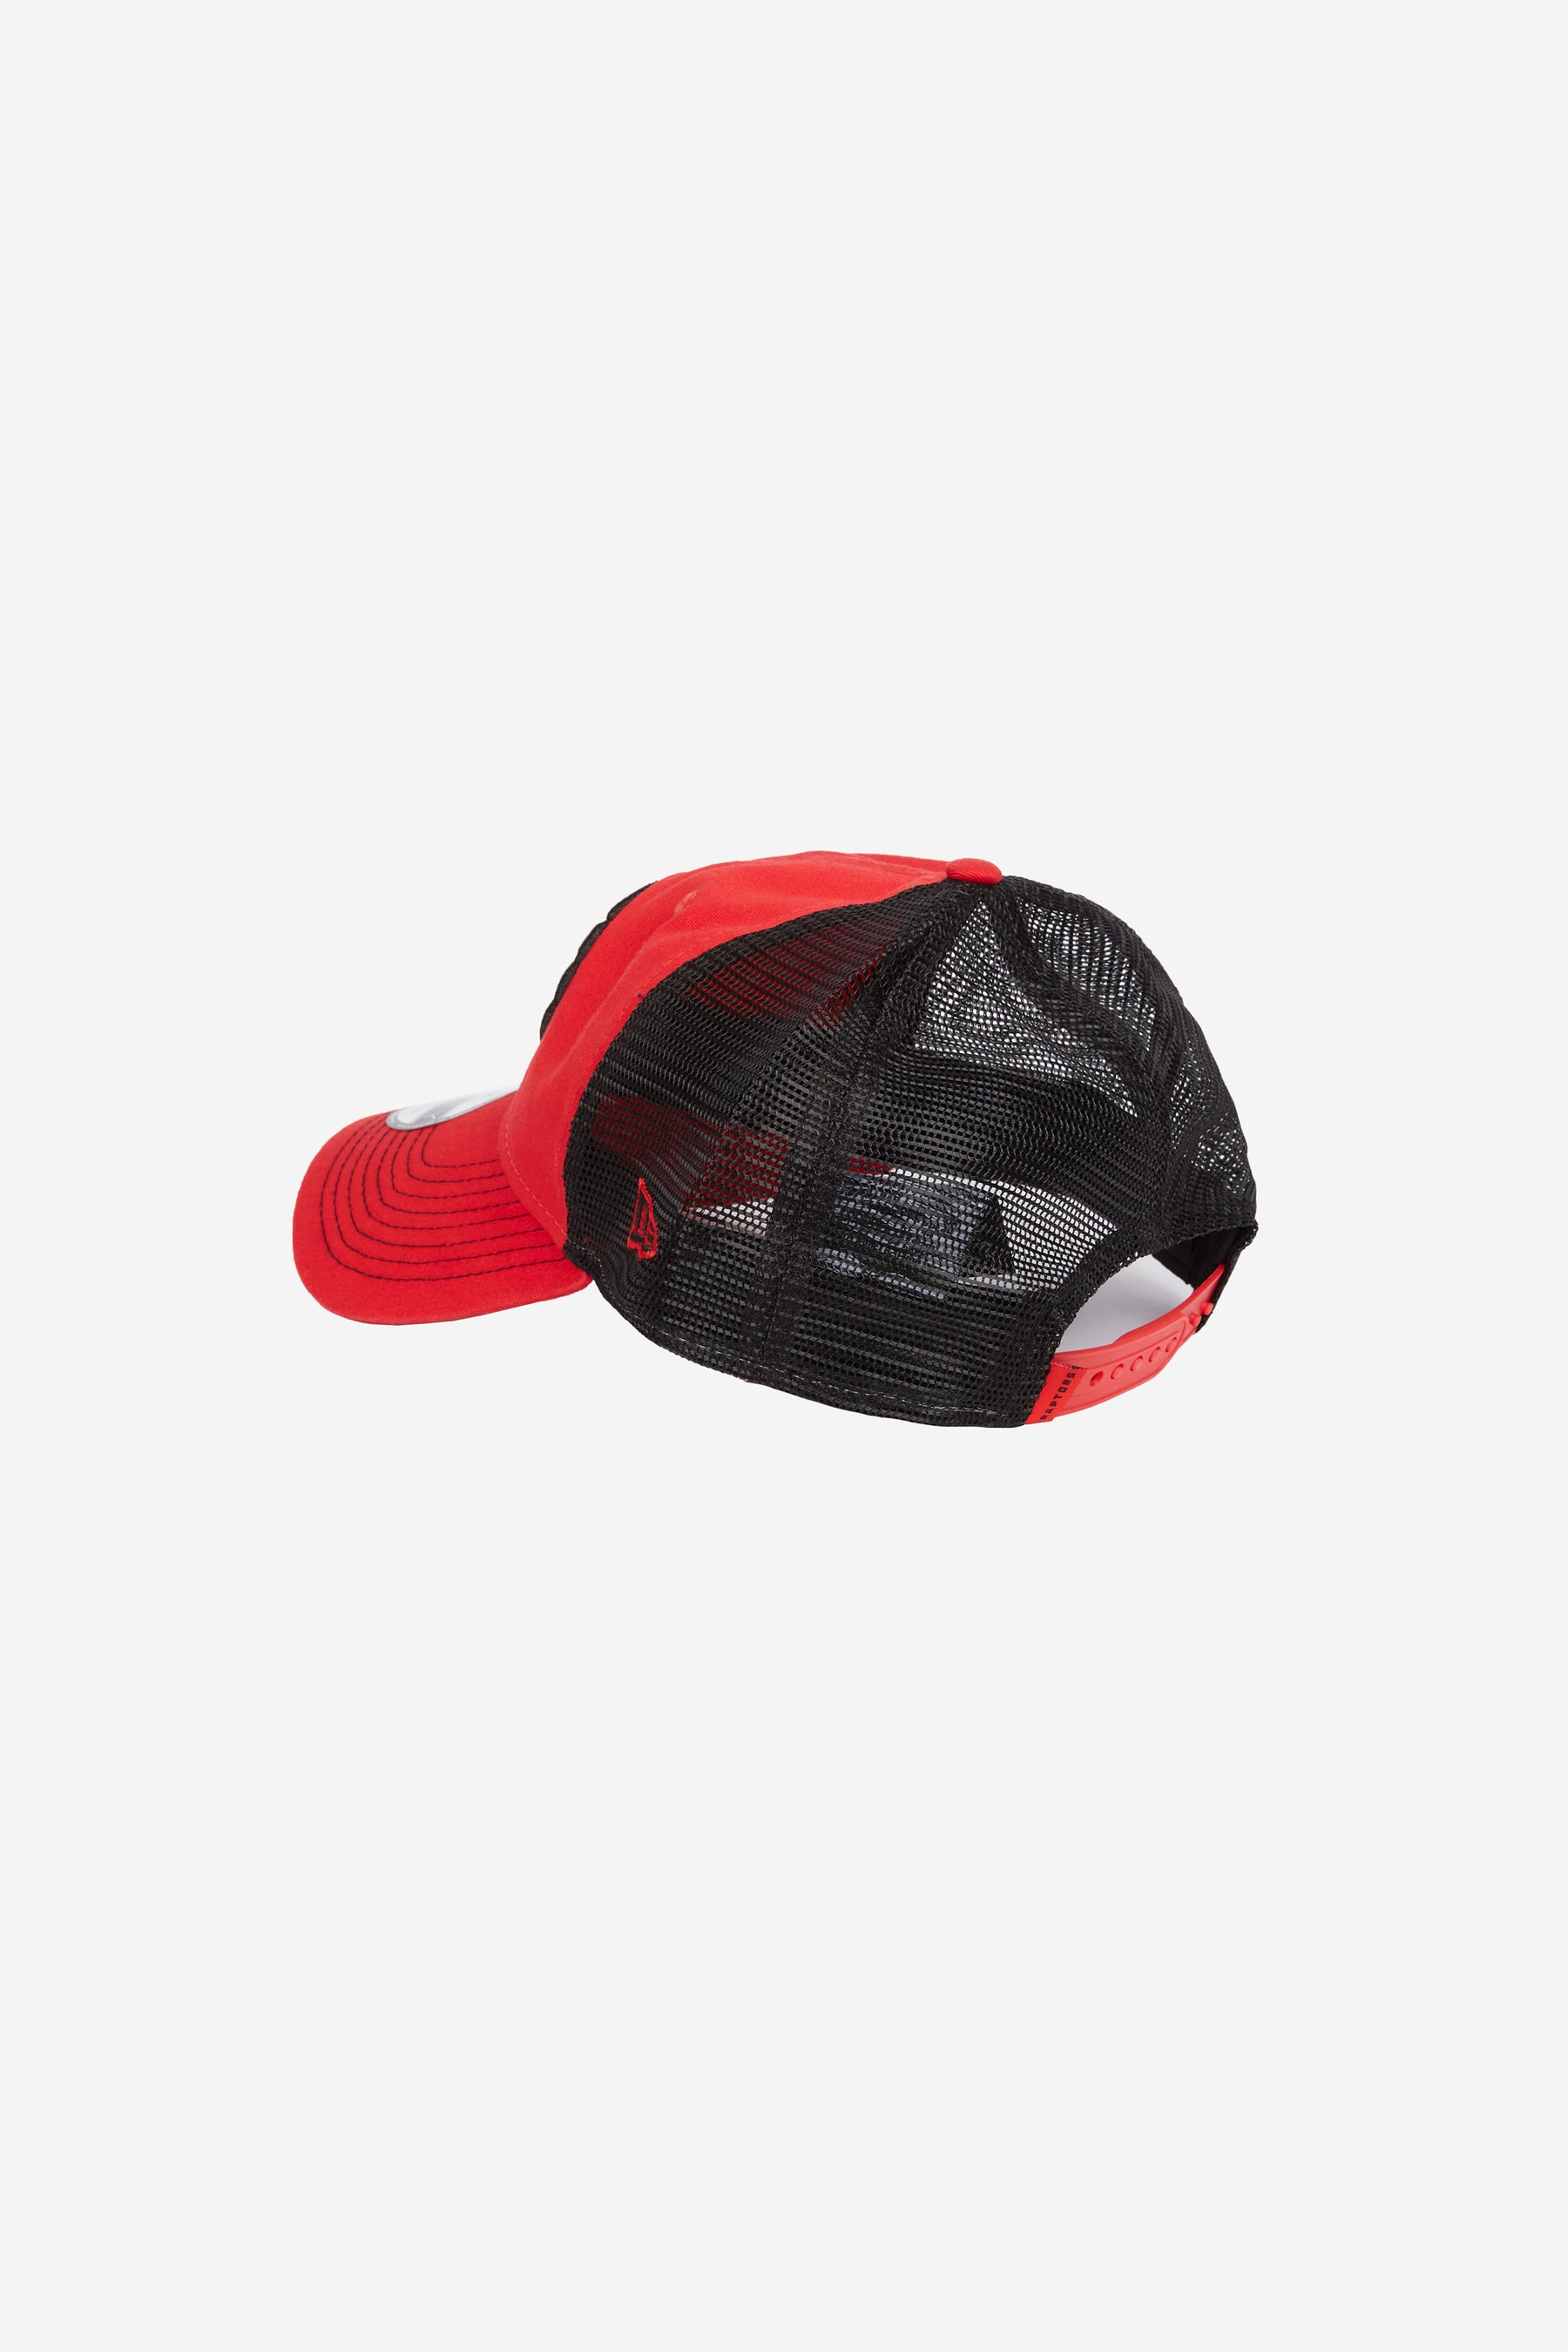 Toronto Raptors Trucker 9TWENTY - Red/Black